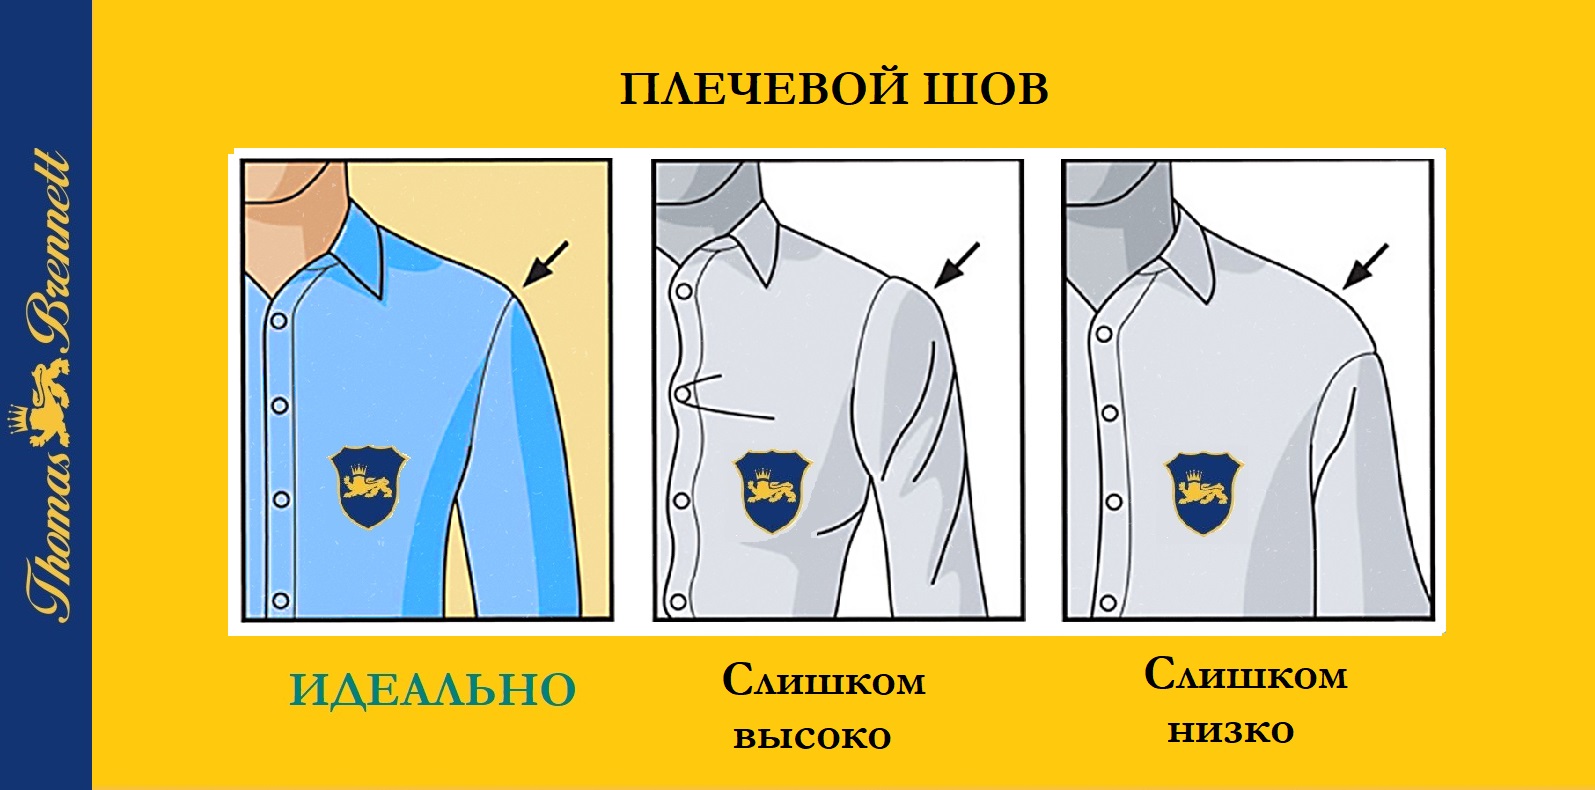 Как выбирать ширину плеч мужской рубашки